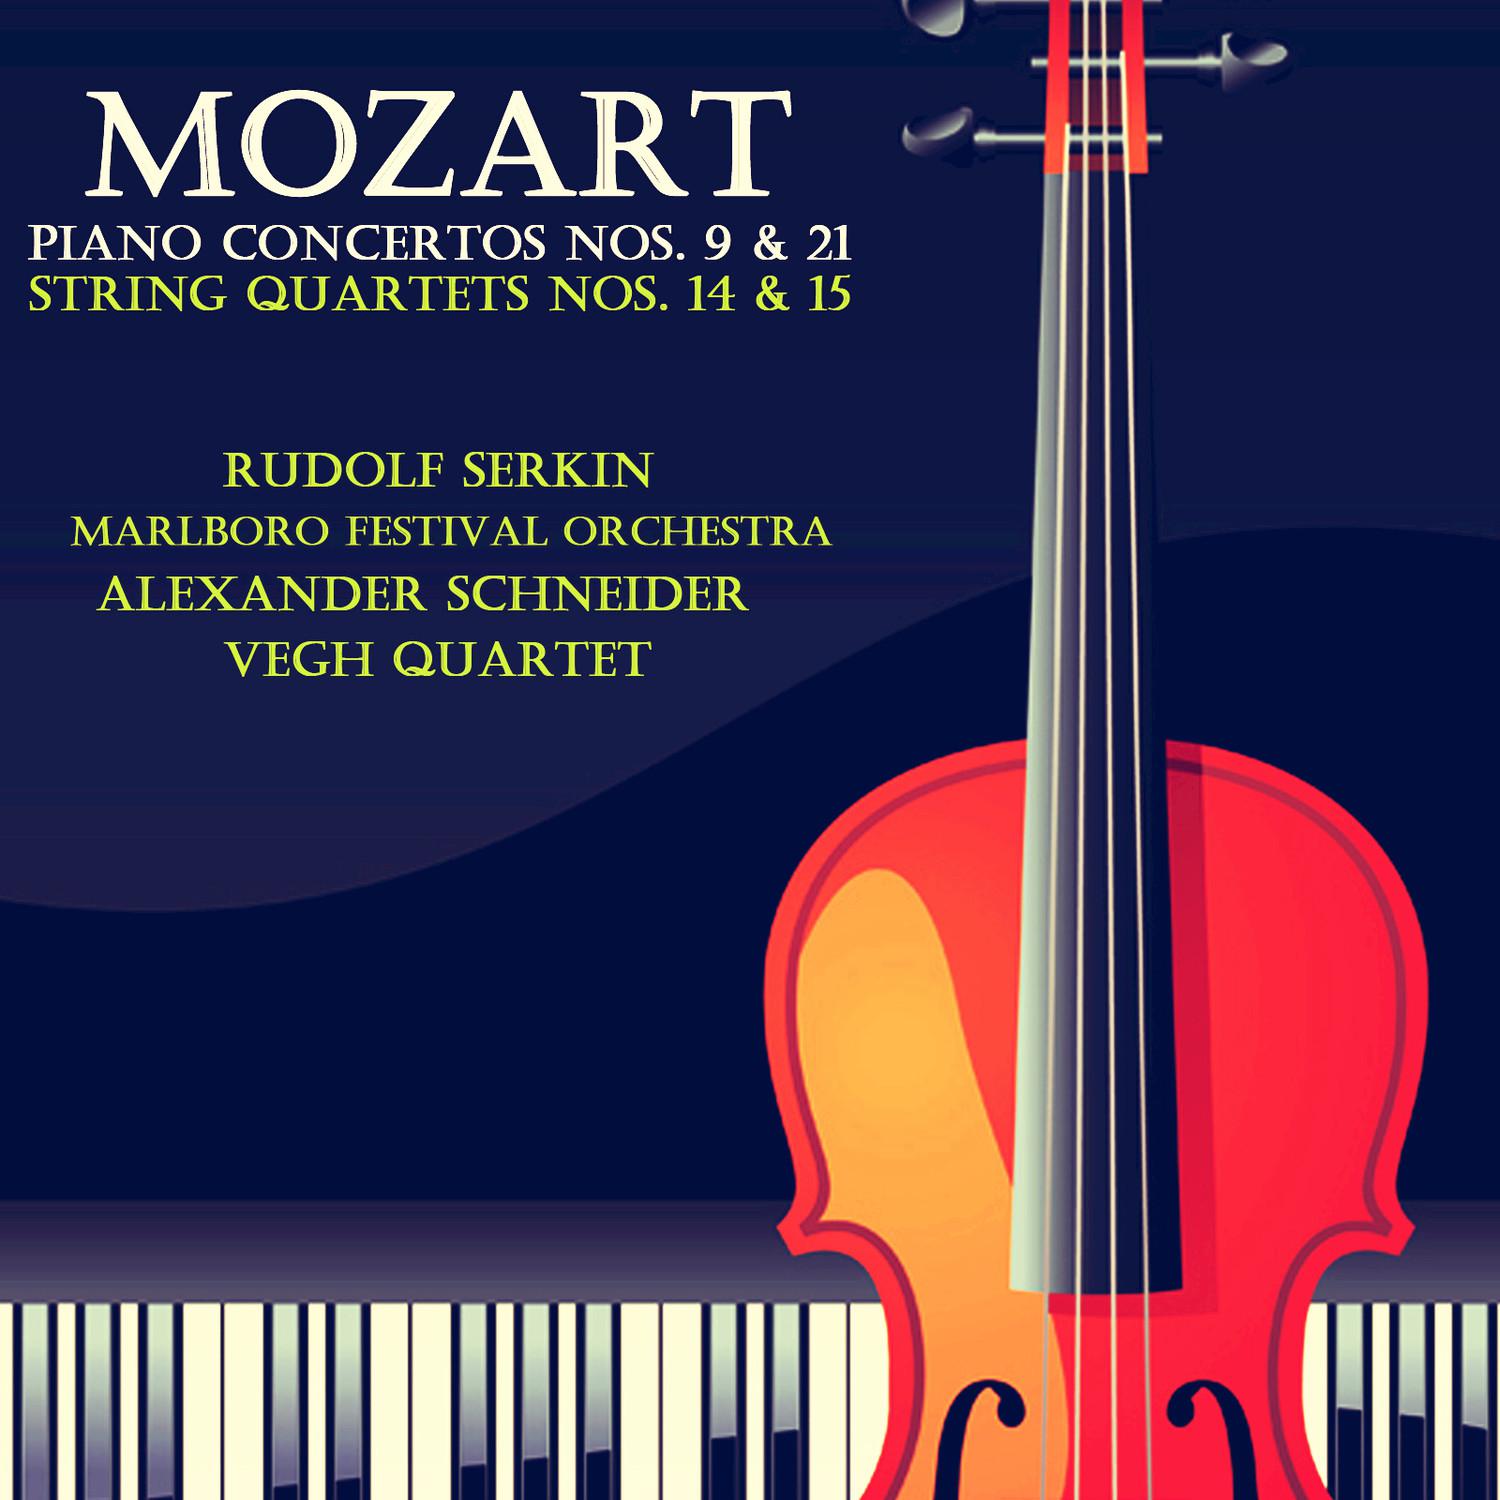 String Quartet No. 15 in D Minor, K. 421: III. Menuetto and Trio - Allegretto